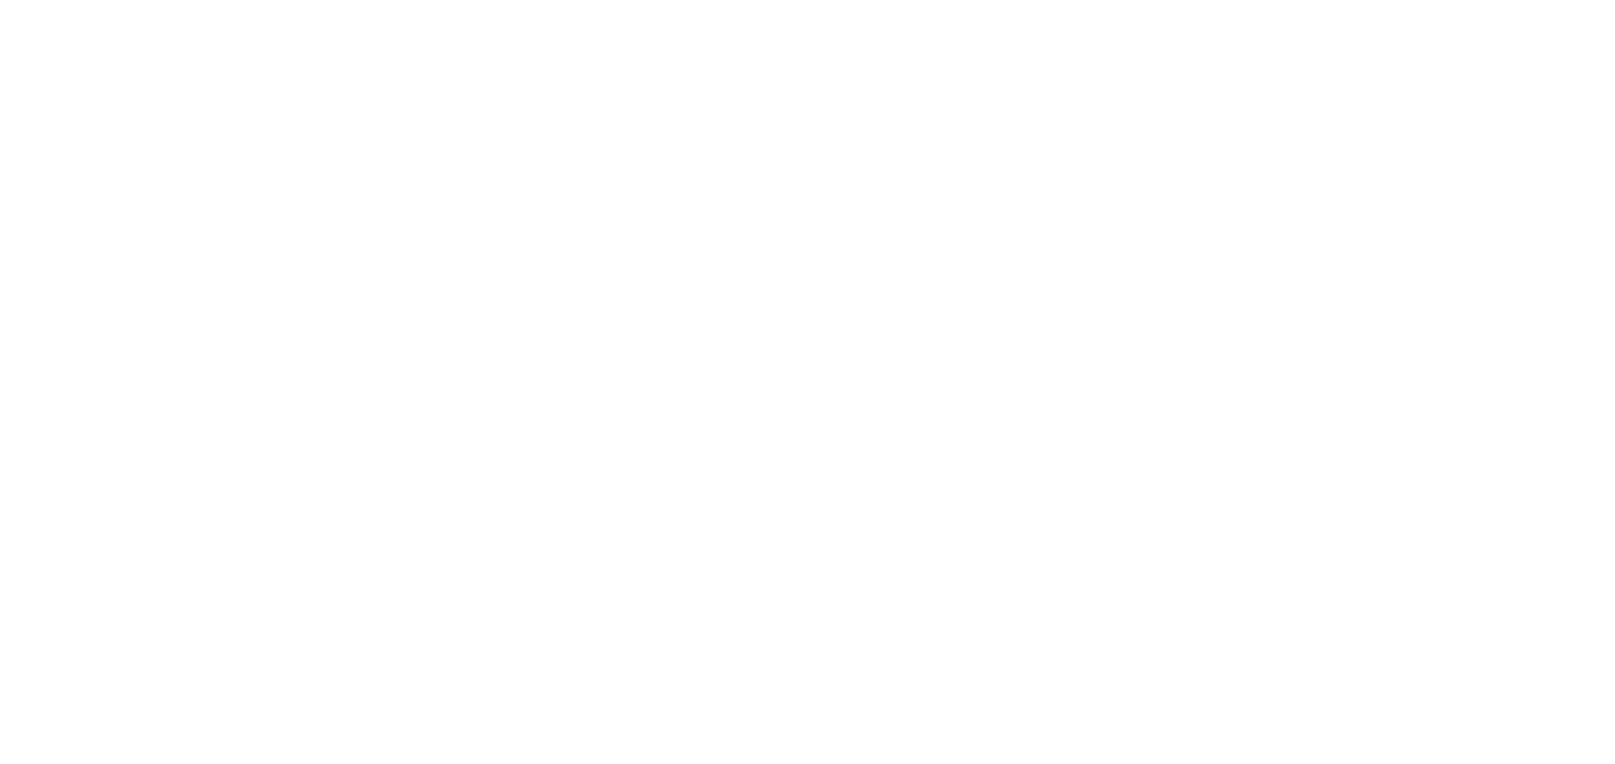 NetEase logo pour fonds sombres (PNG transparent)